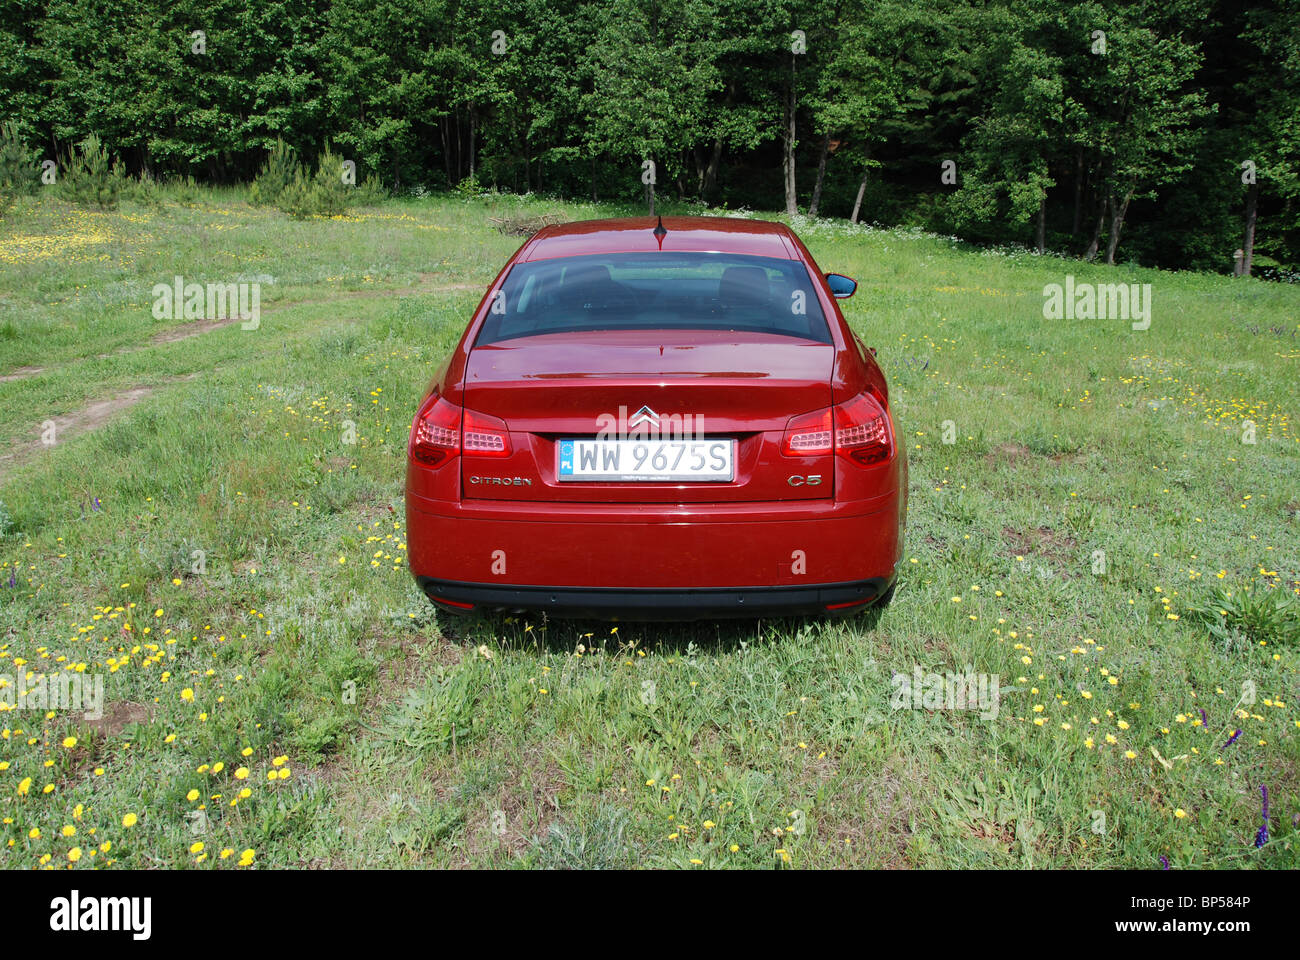 Citroen C5 2,0 HDI - mein 2008 - rot Metallic - 5 Türen - französische populäre höhere Mittelklasse-Auto, Segment D - auf Wiese Stockfoto